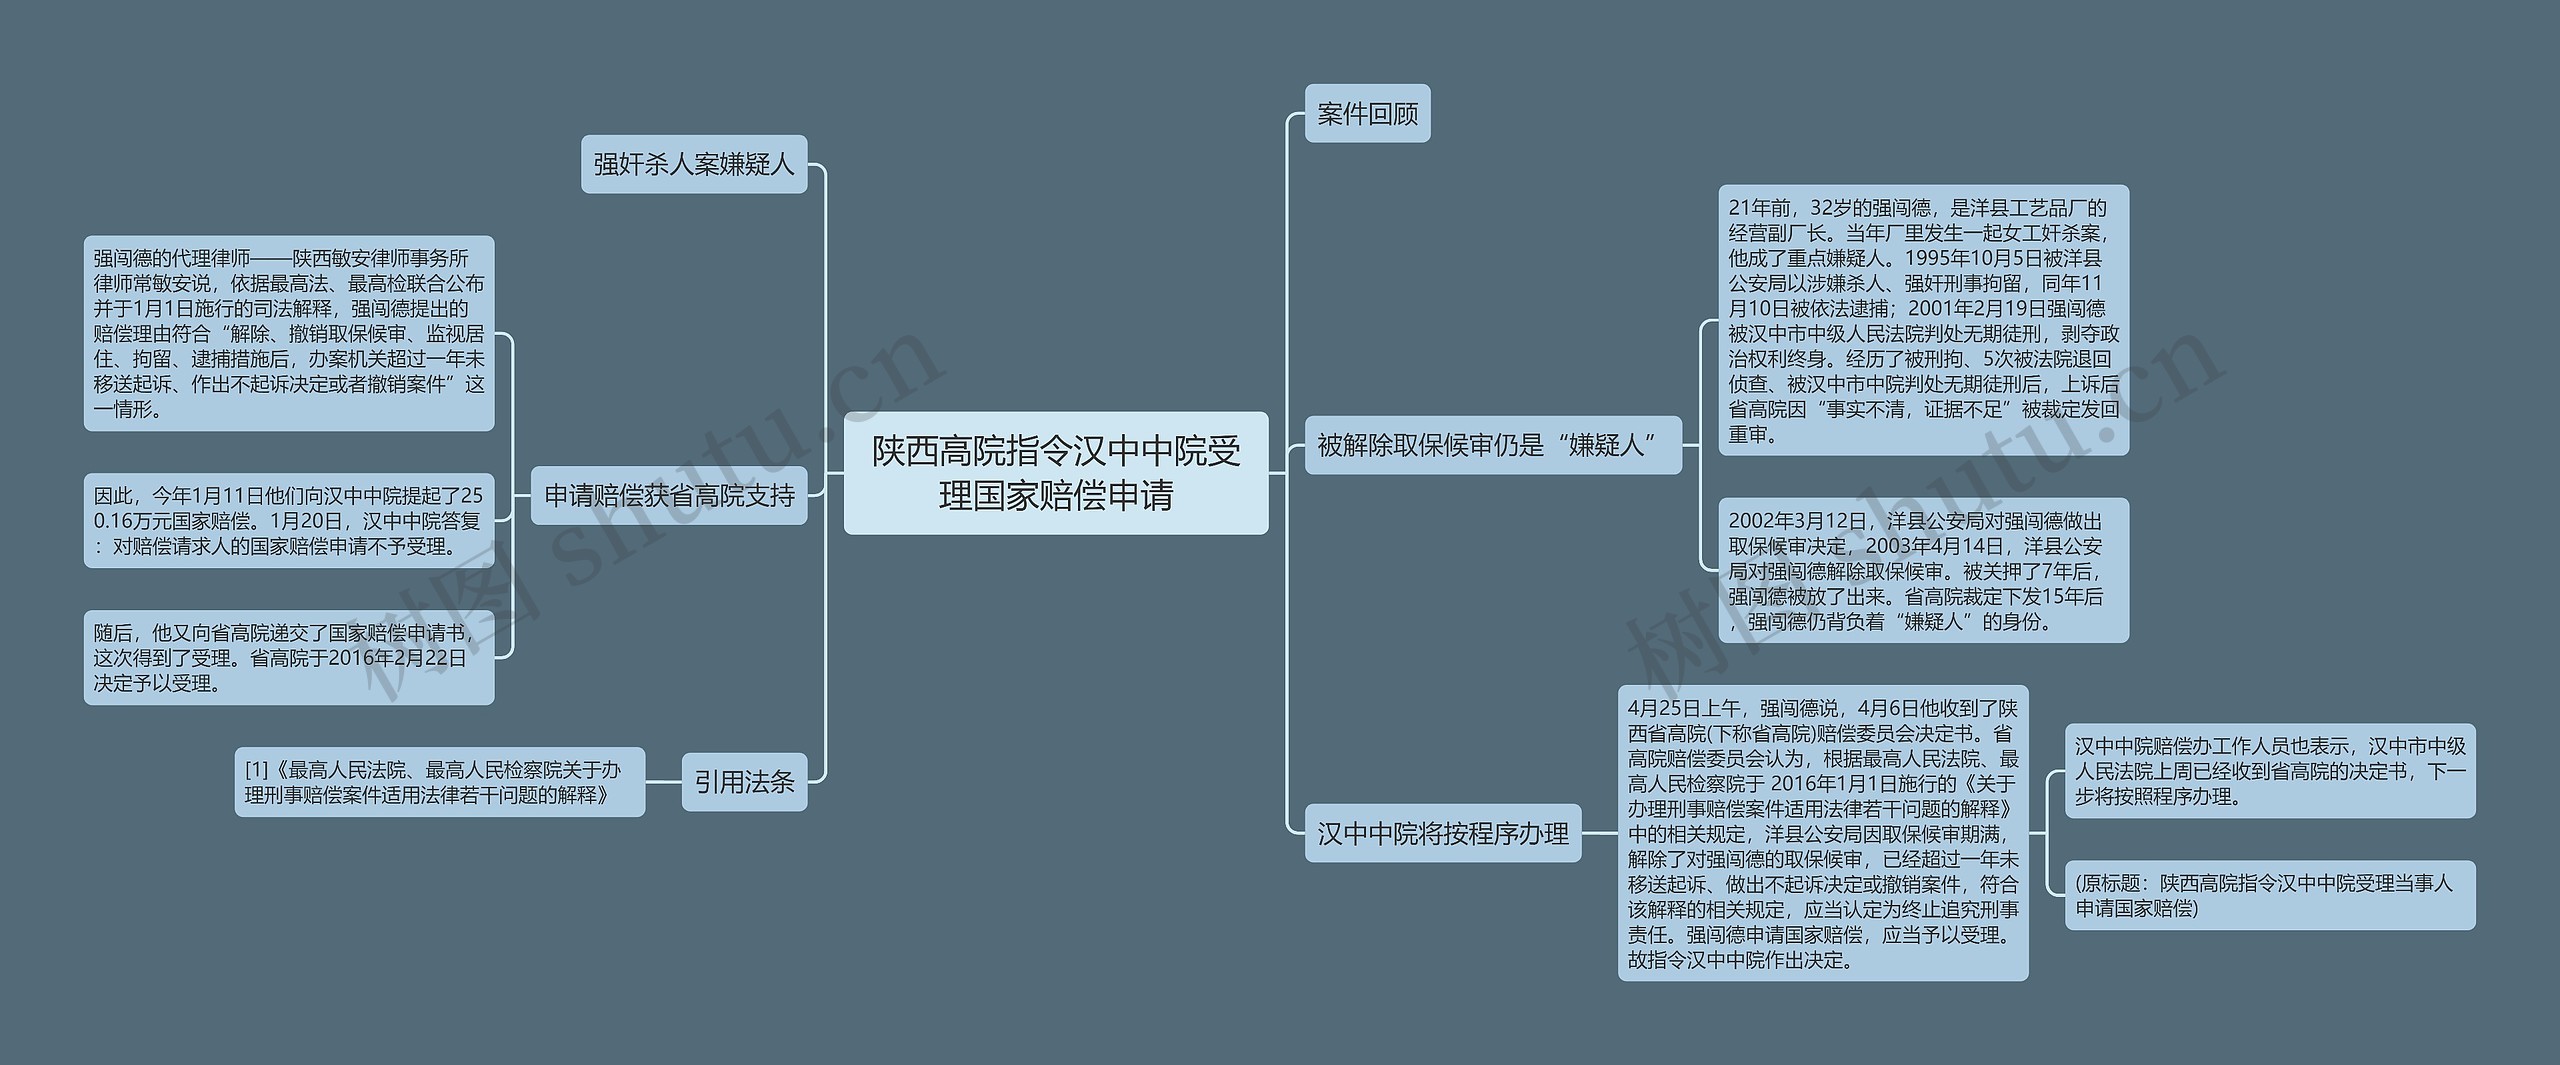 陕西高院指令汉中中院受理国家赔偿申请